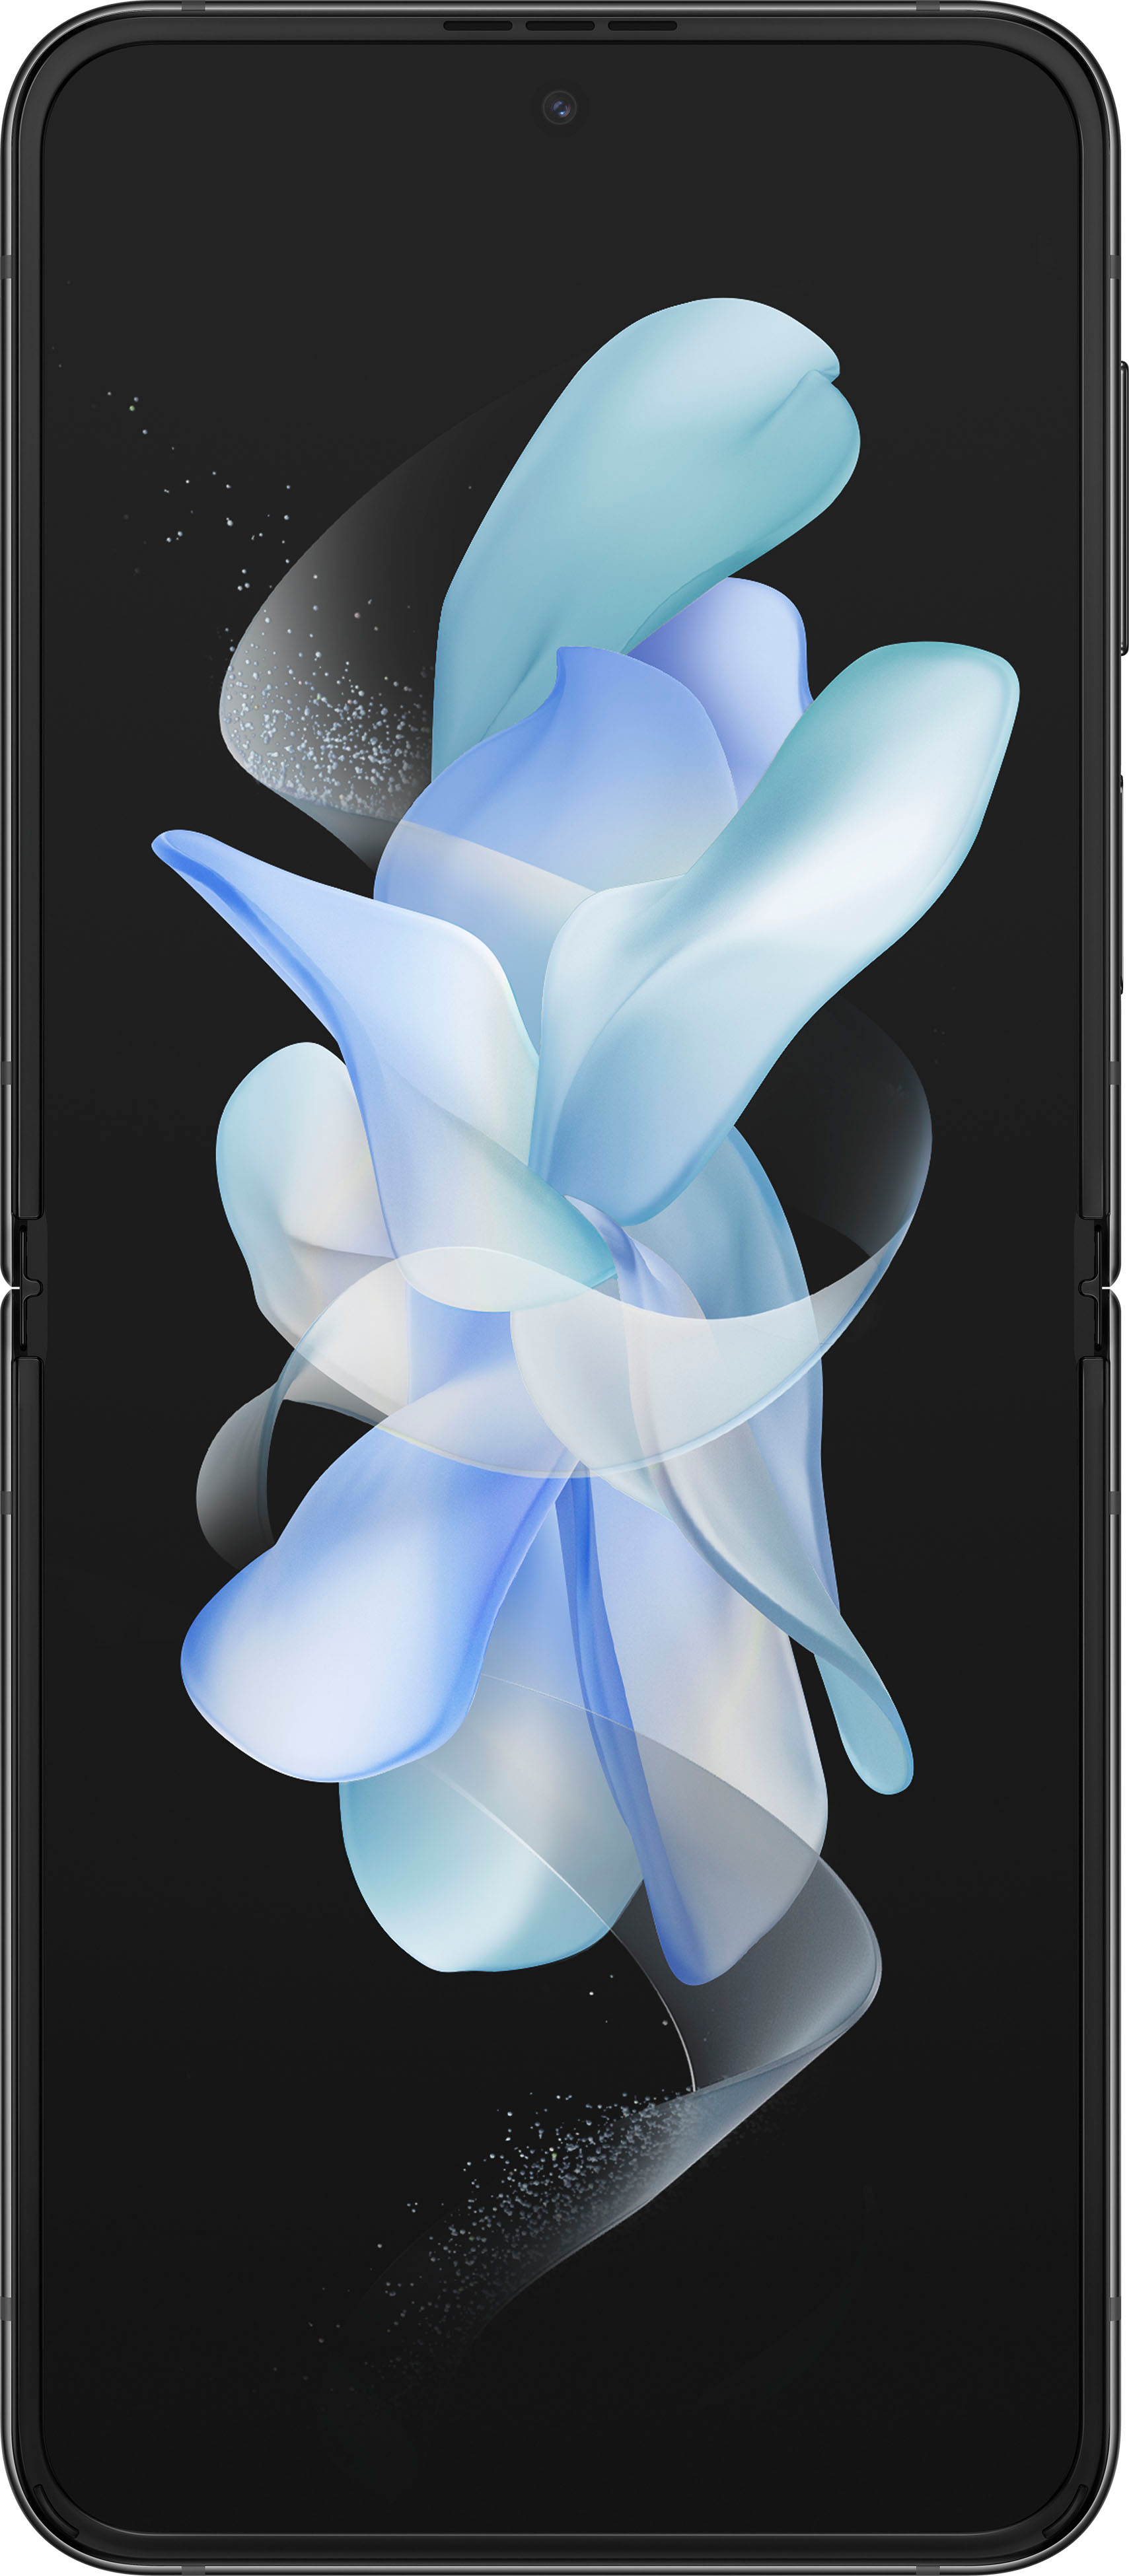 オーディオ機器 アンプ Samsung Galaxy Z Flip4 128GB Graphite (Verizon) SM-F721UZAAVZW 